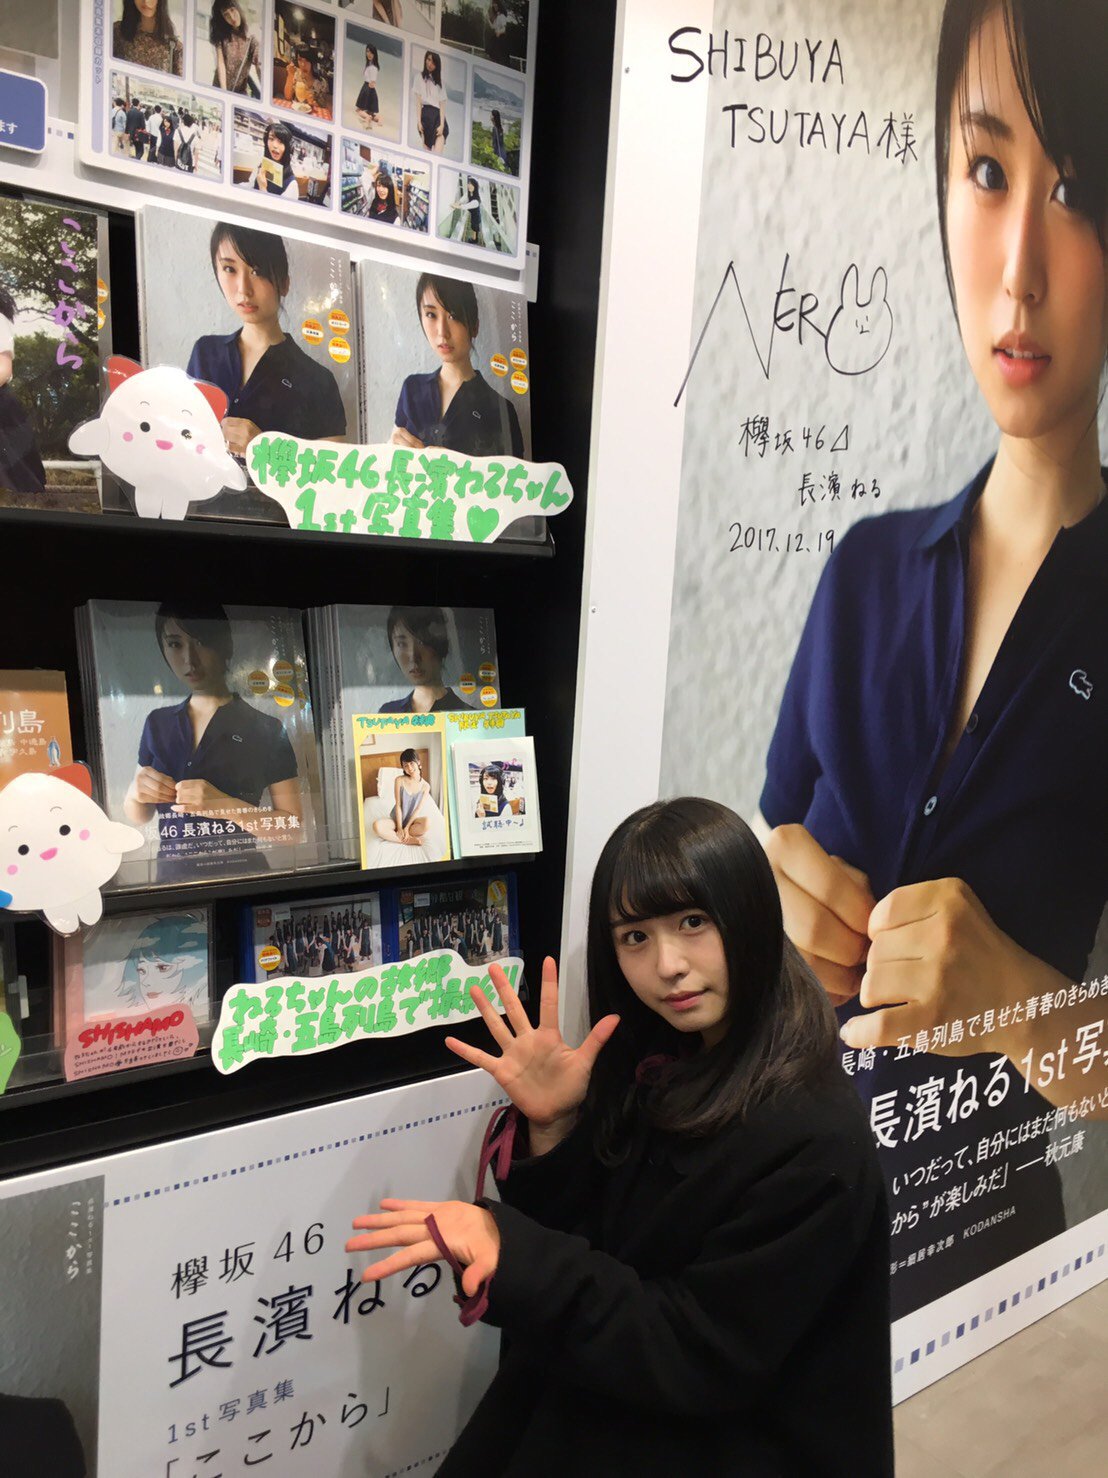 SHIBUYA TSUTAYA BOOK on X: "【#長濱ねる さんご来店】 1st写真集